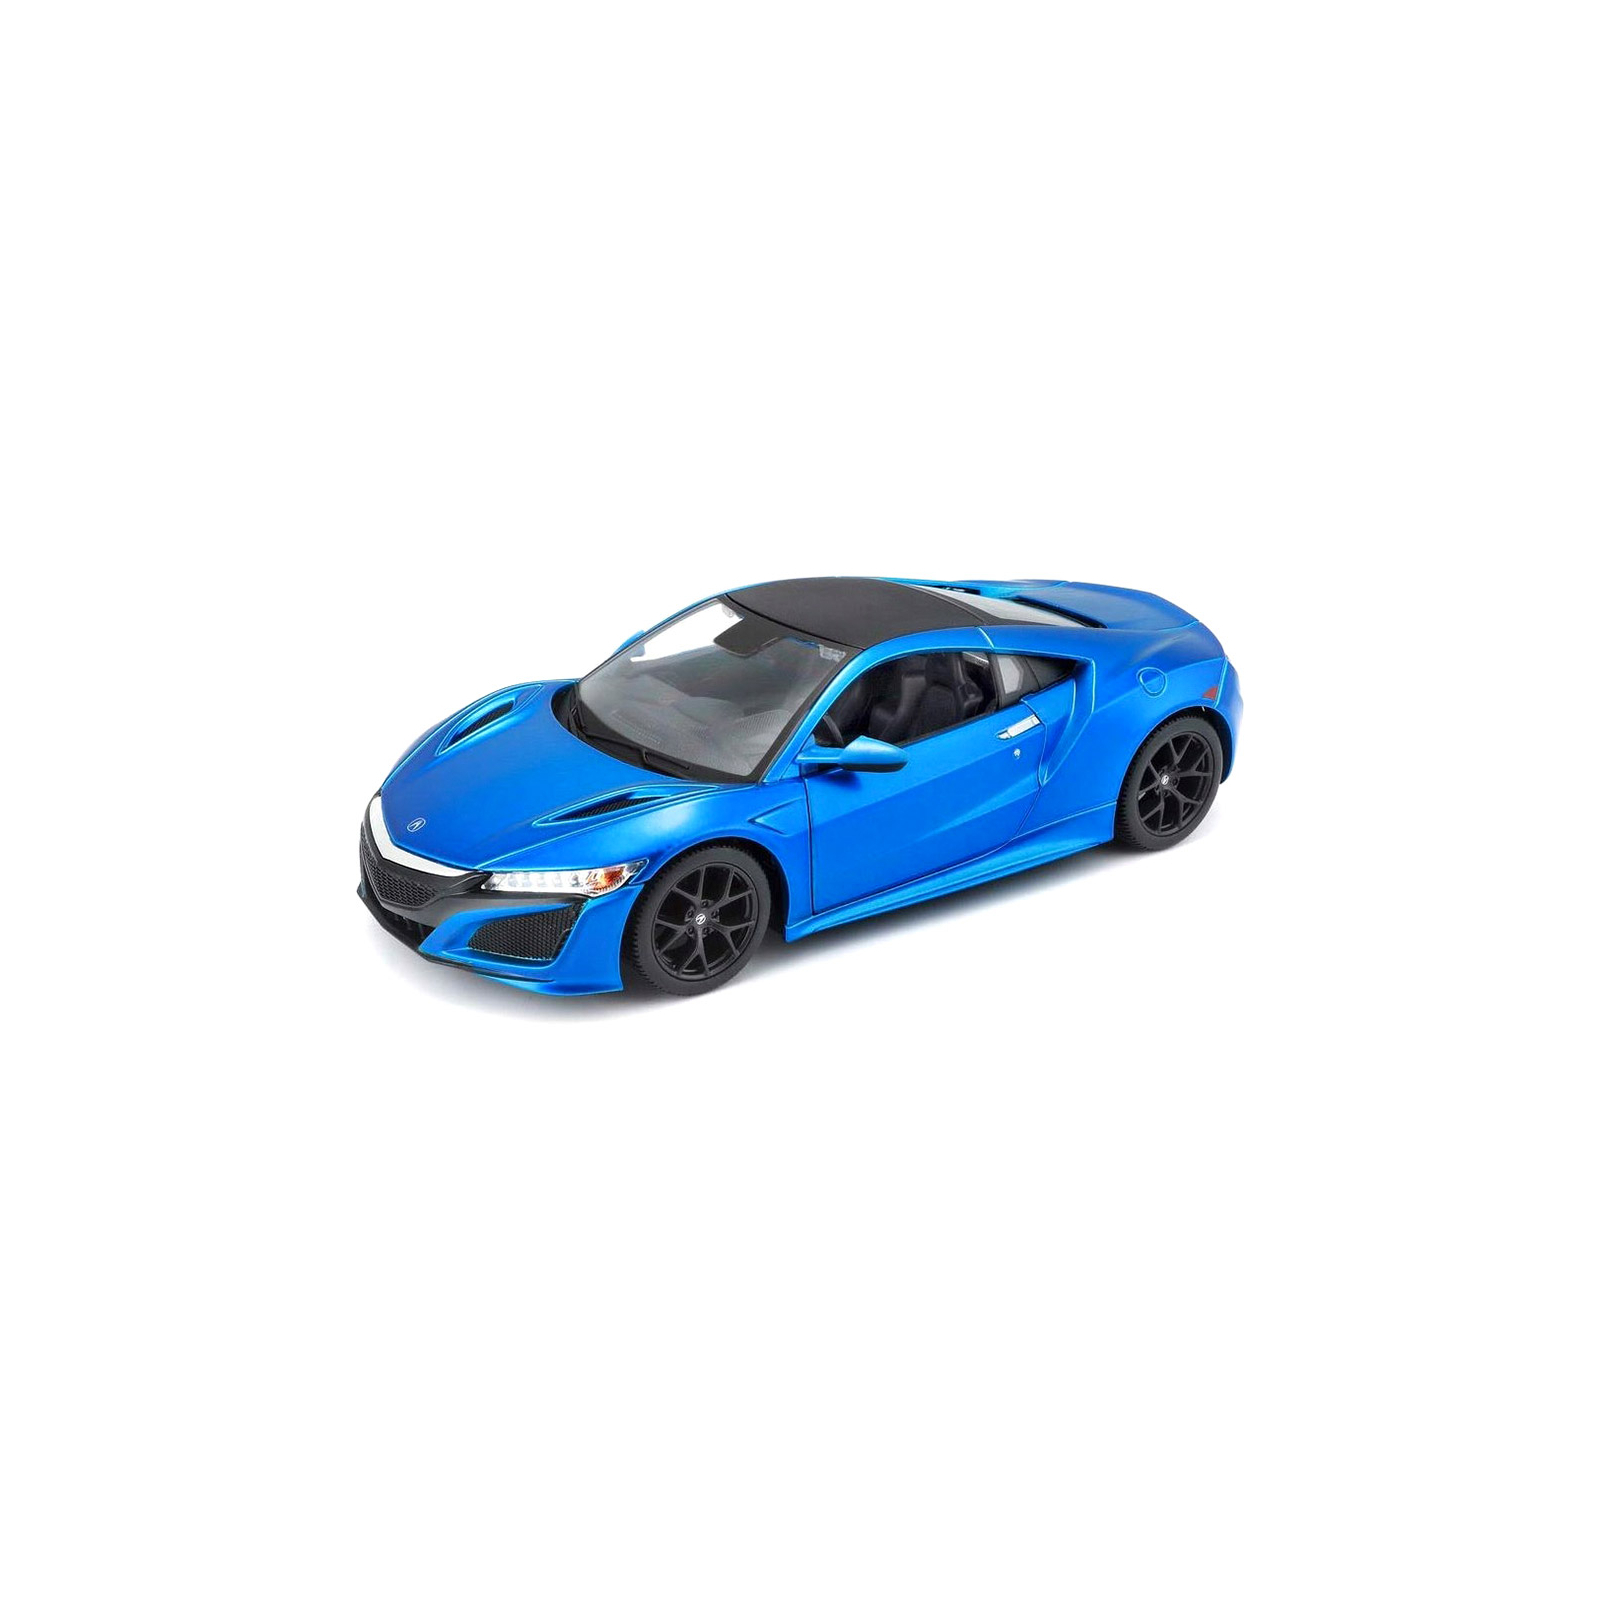 Машина Maisto 2017 Acura NSX синий металлик (1:24) (31234 met. blue)